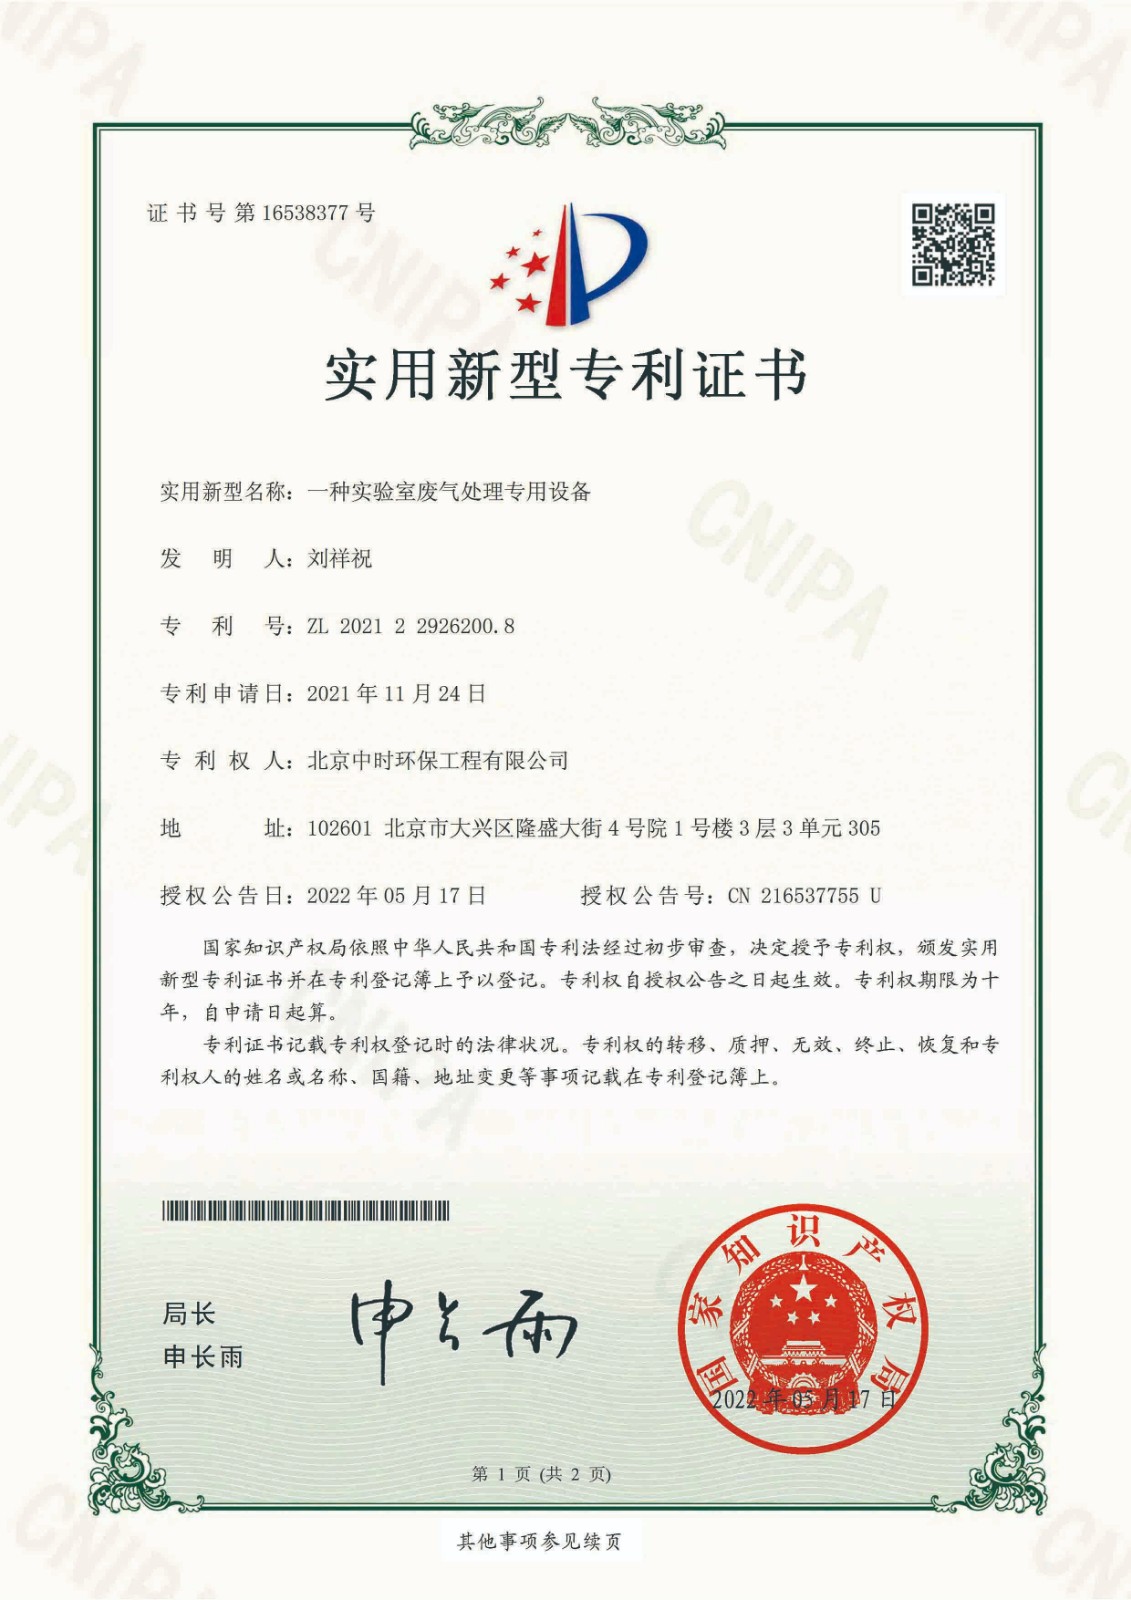 20220517-专利证书-2021229262008-一种实验室废气处理专用设备-202129262008-北京中时环保工程有限公司-20211124-1.jpg